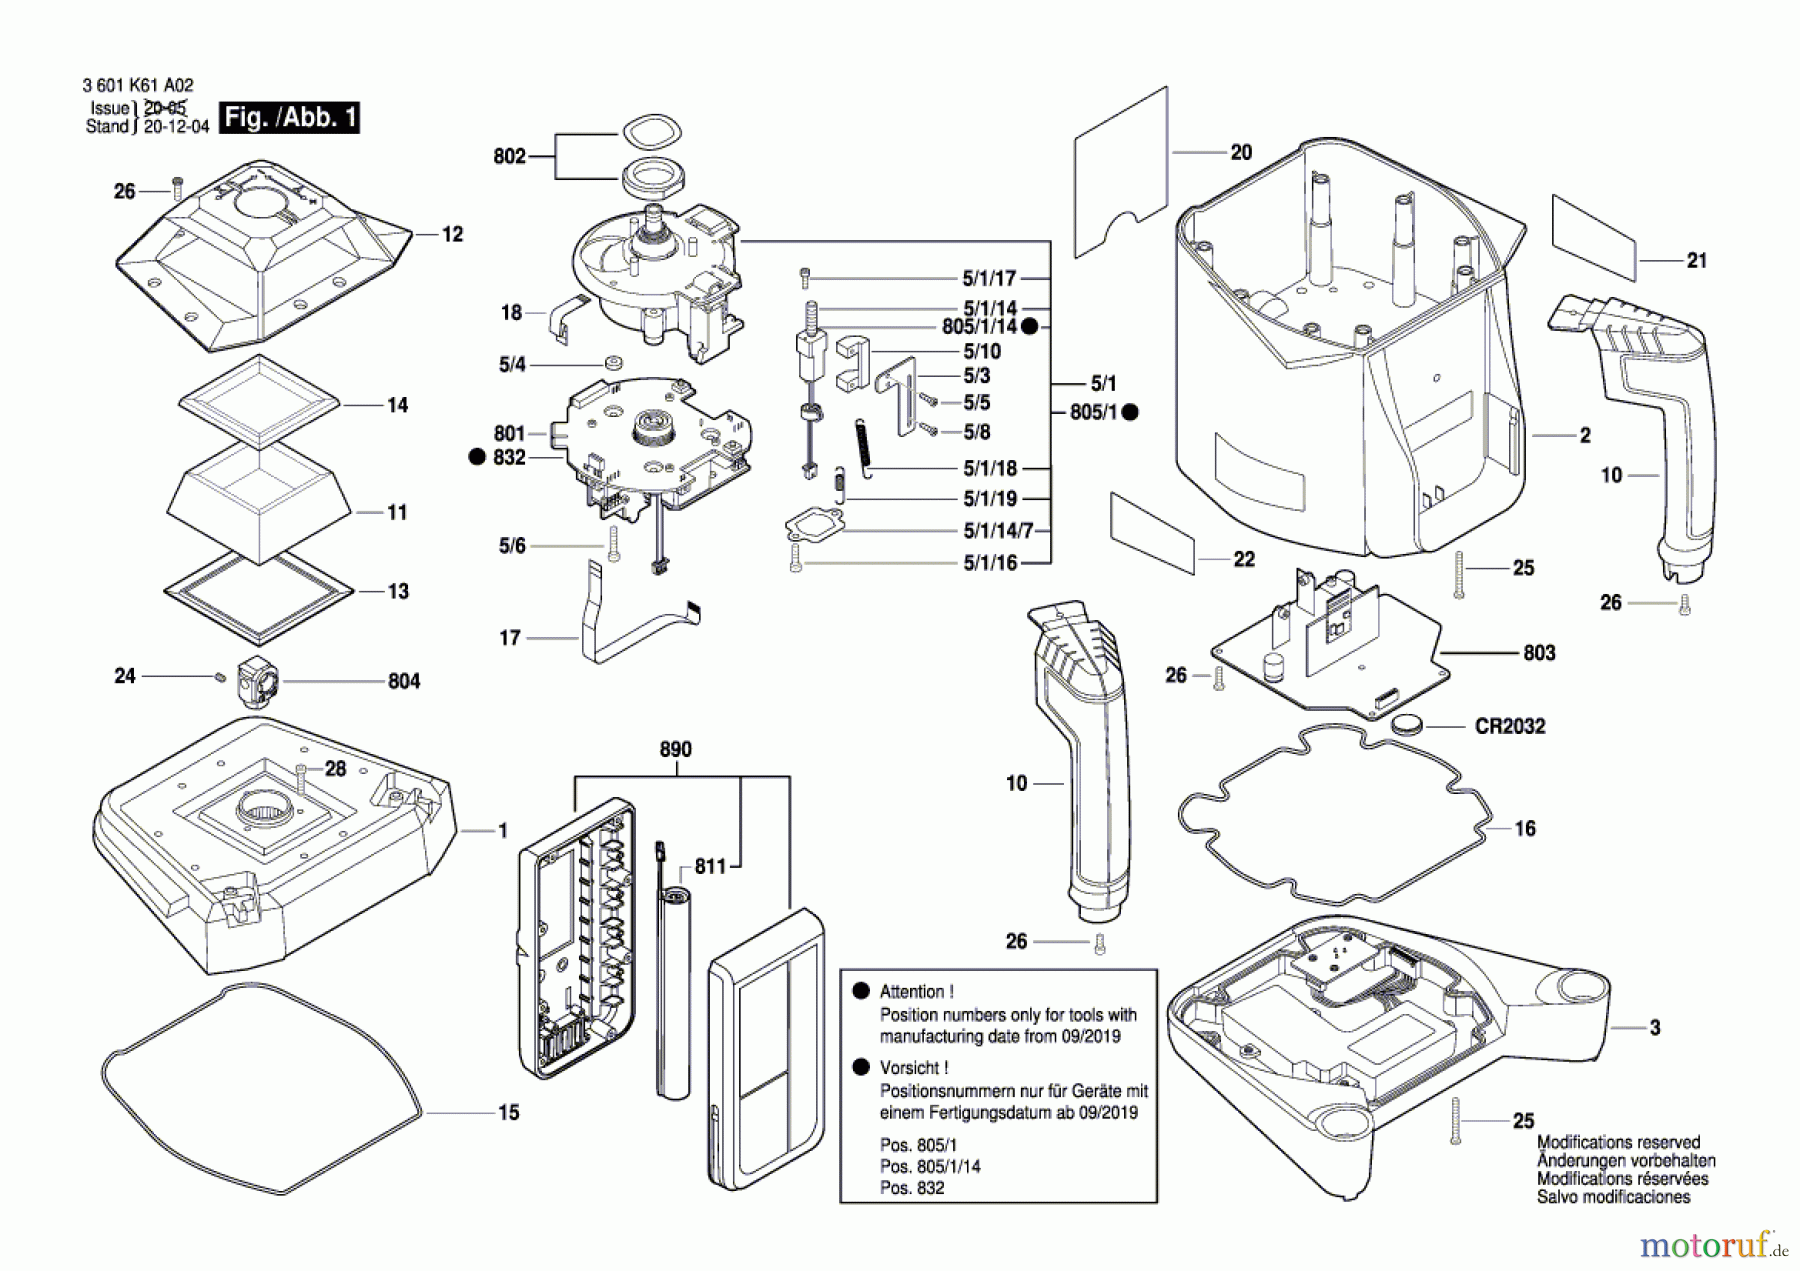  Bosch Werkzeug Baulaser GRL 500 H Seite 1